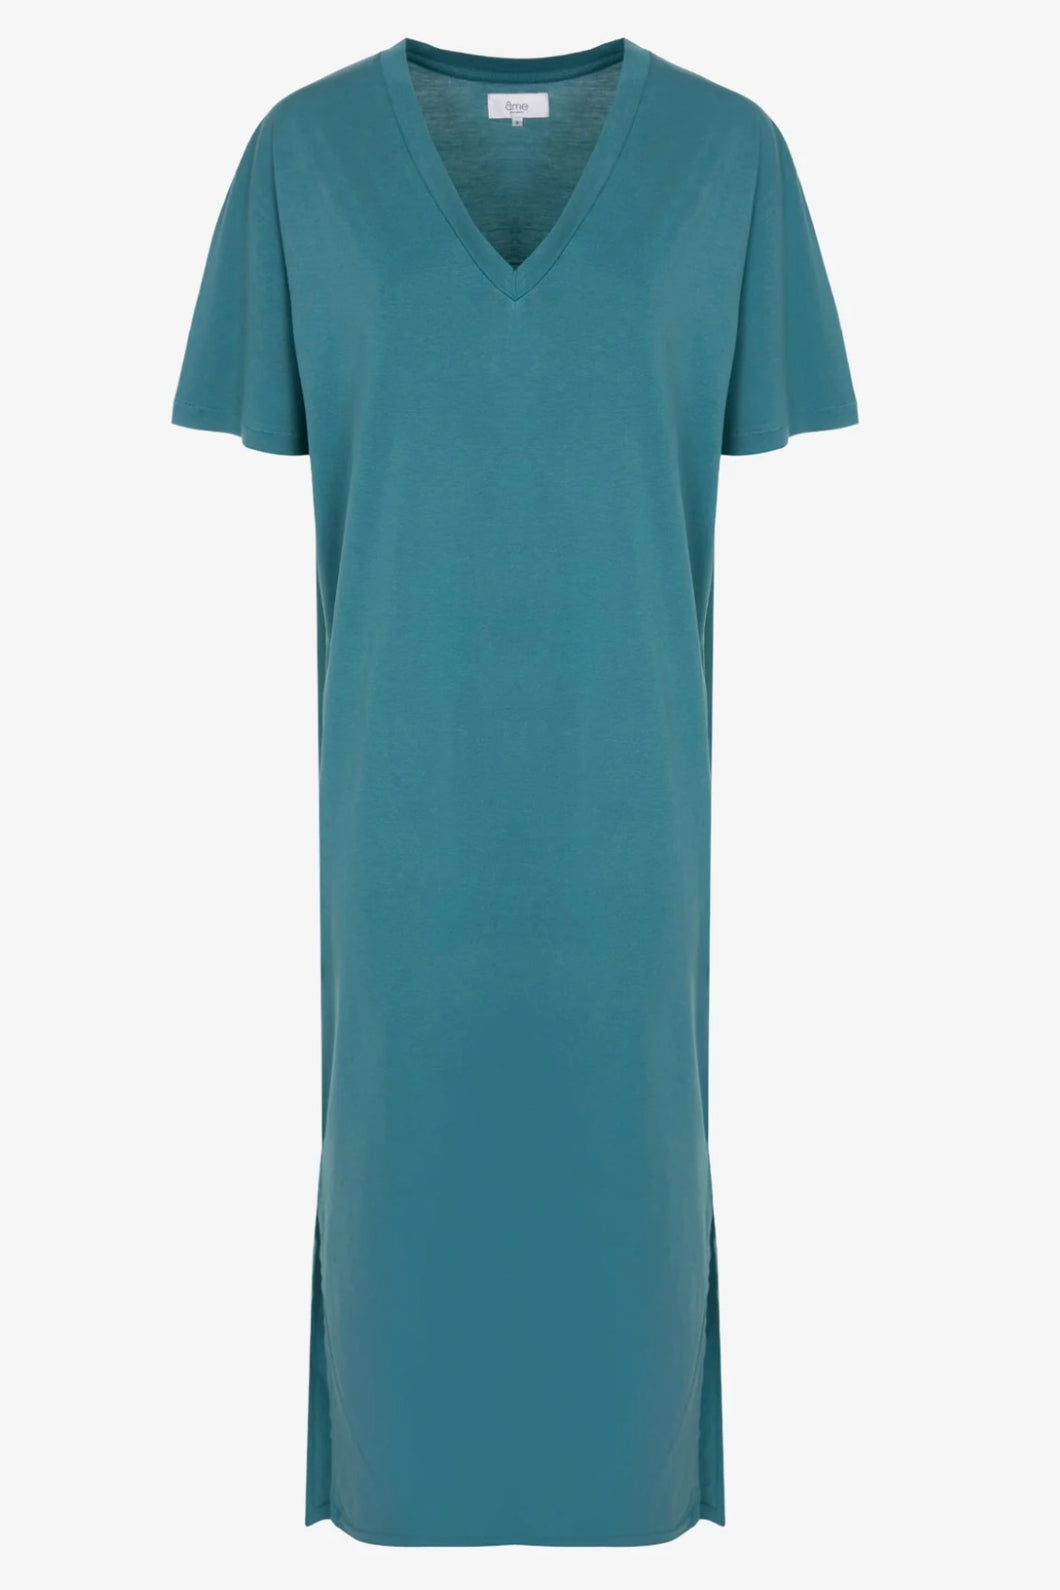 Âme Heva T-shirt Dress Blue NO09